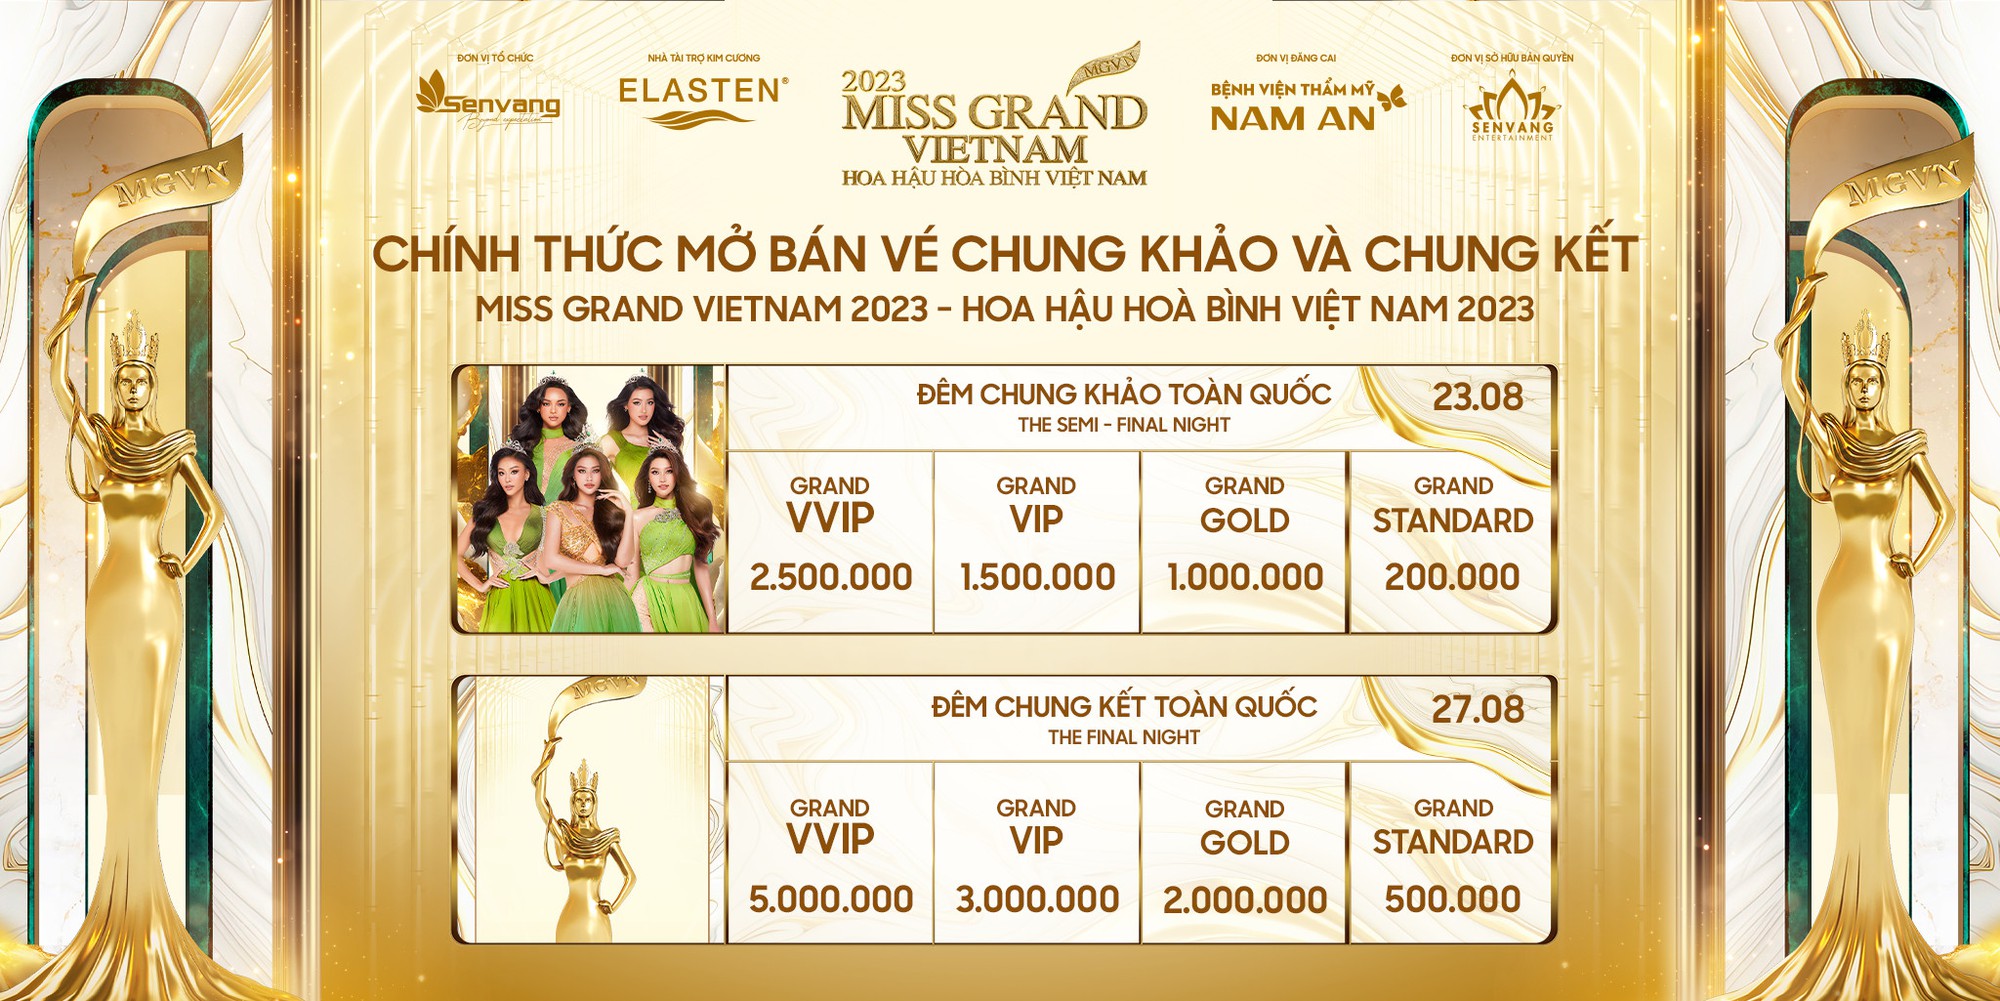 Chi Pu, HIEUTHUHAI cùng dàn sao Việt đổ bộ Chung khảo và Chung kết Miss Grand Vietnam, hứa hẹn đêm thi bùng nổ - Ảnh 5.